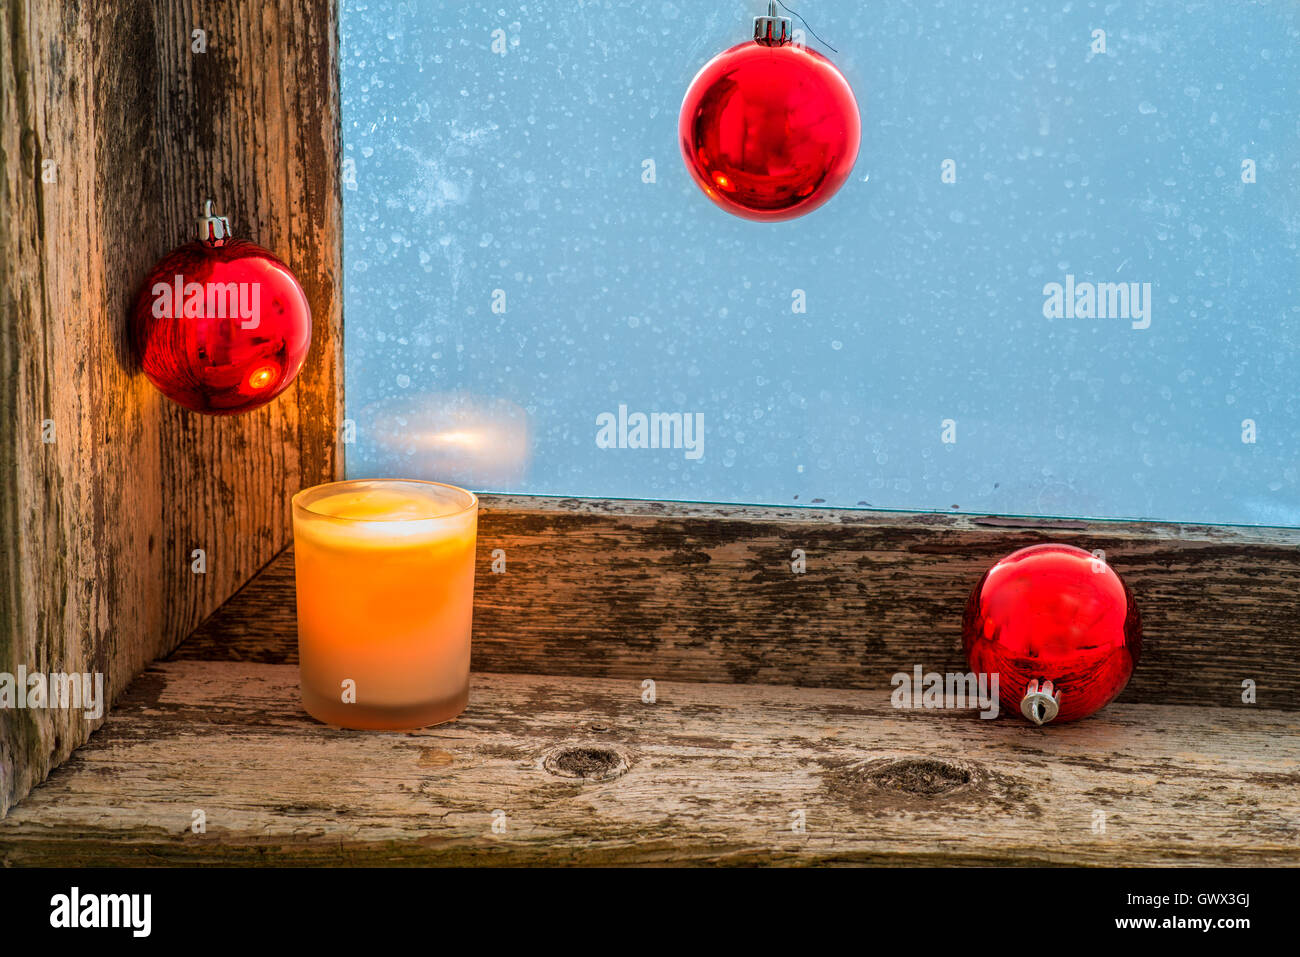 Bougie allumée et des boules de Noël sur le rebord d'une ancienne fenêtre avec verre dépoli Banque D'Images